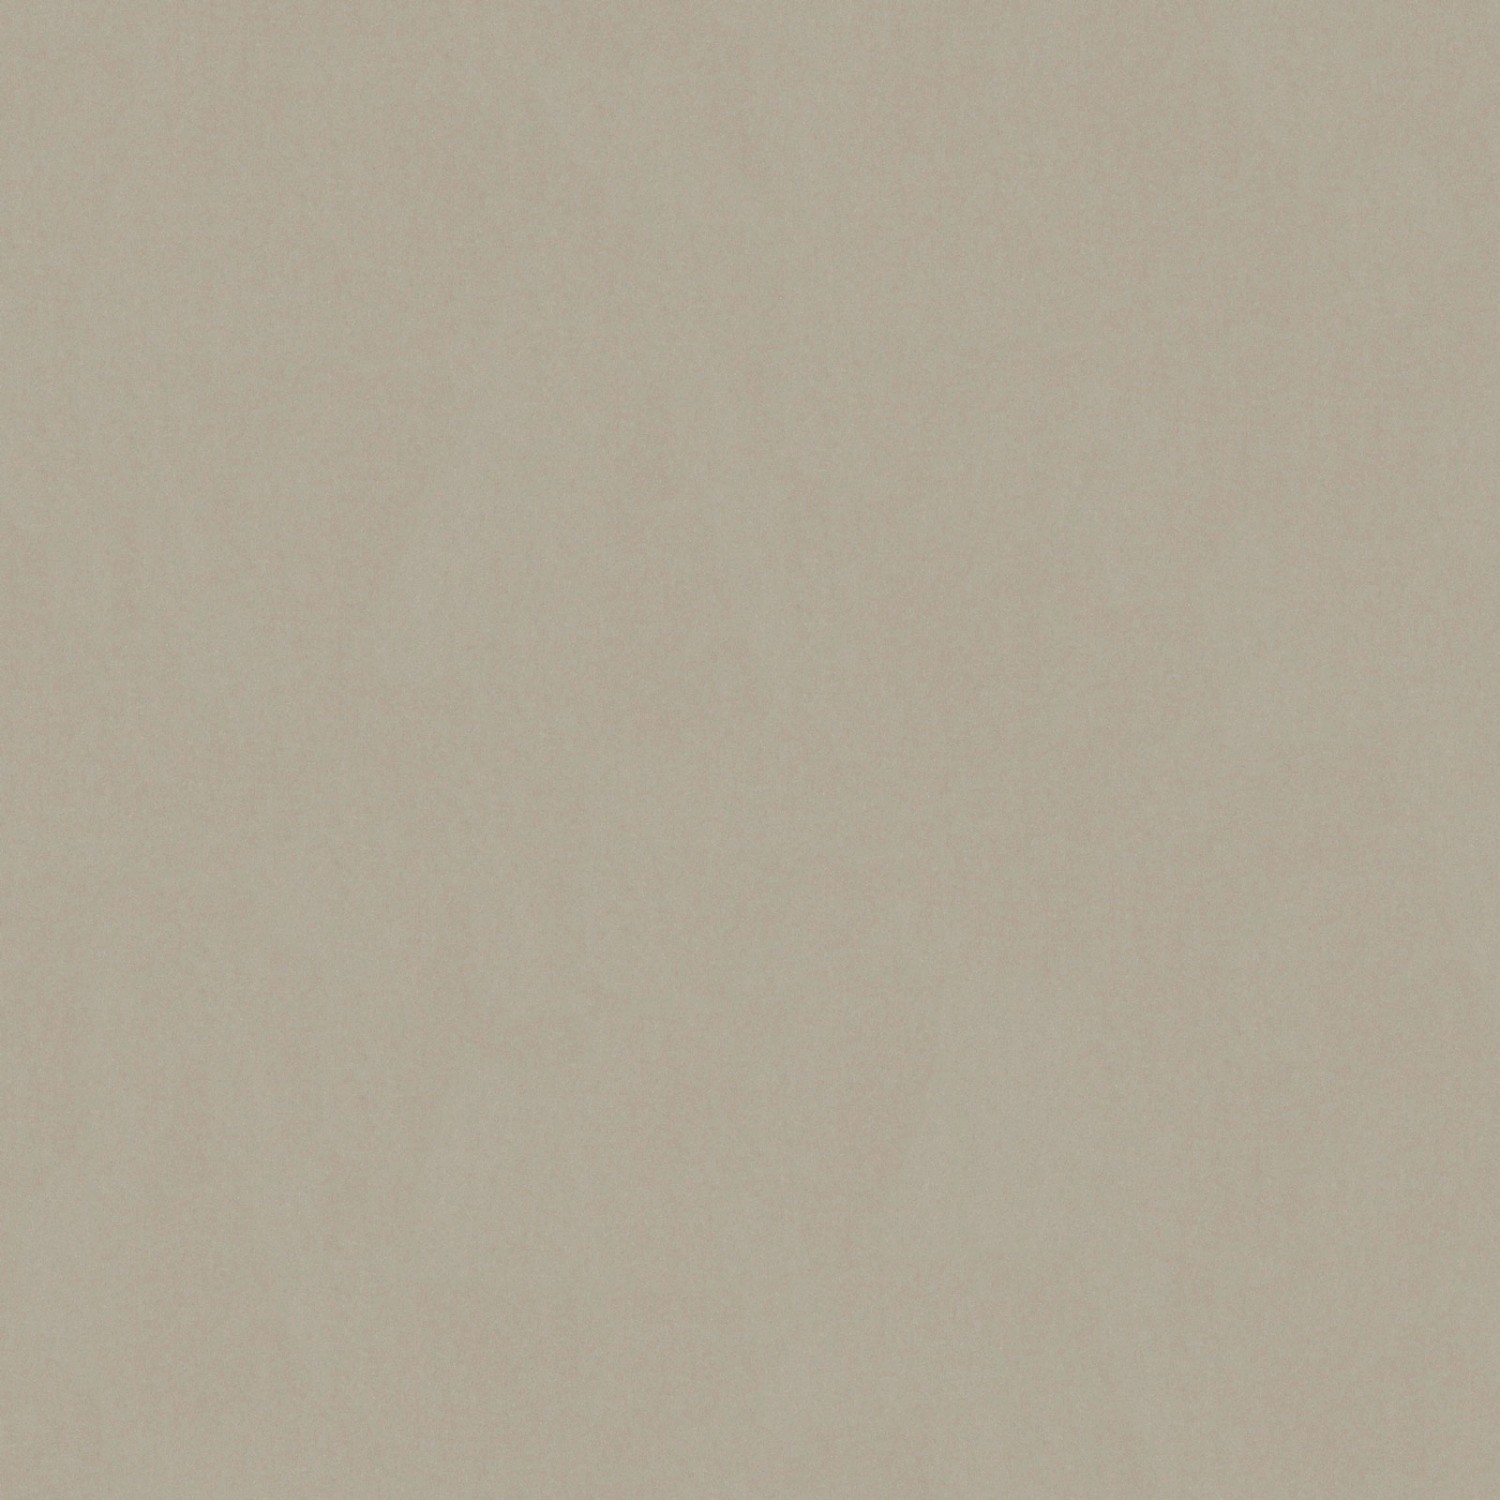 Bricoflor Taupe Tapete im Uni Stil Vlies Unitapete in Grau Beige für Schlafzimmer und Büro Moderne Einfarbige Tapete im Schlichten Look von Bricoflor